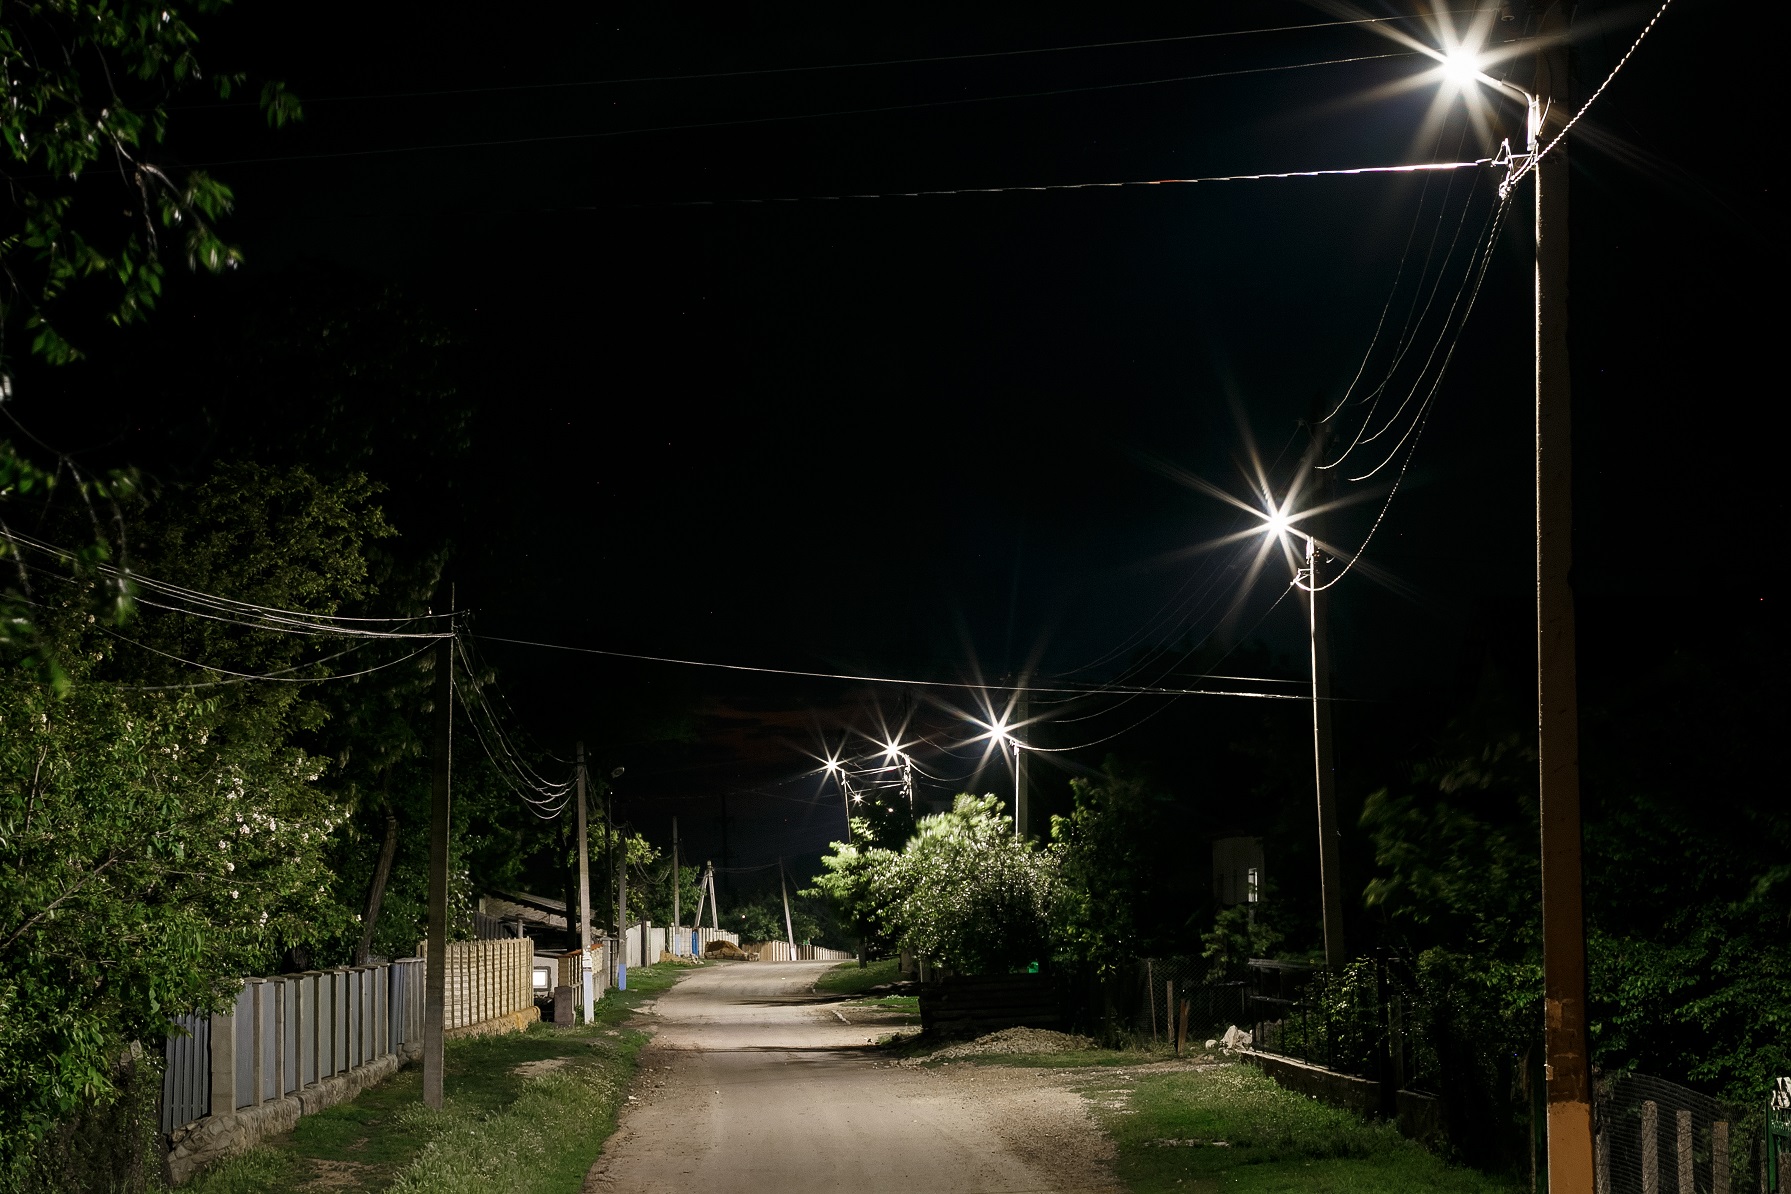 Удовлетворенность жителей сельского поселения режимом работы уличного освещения в поселении.